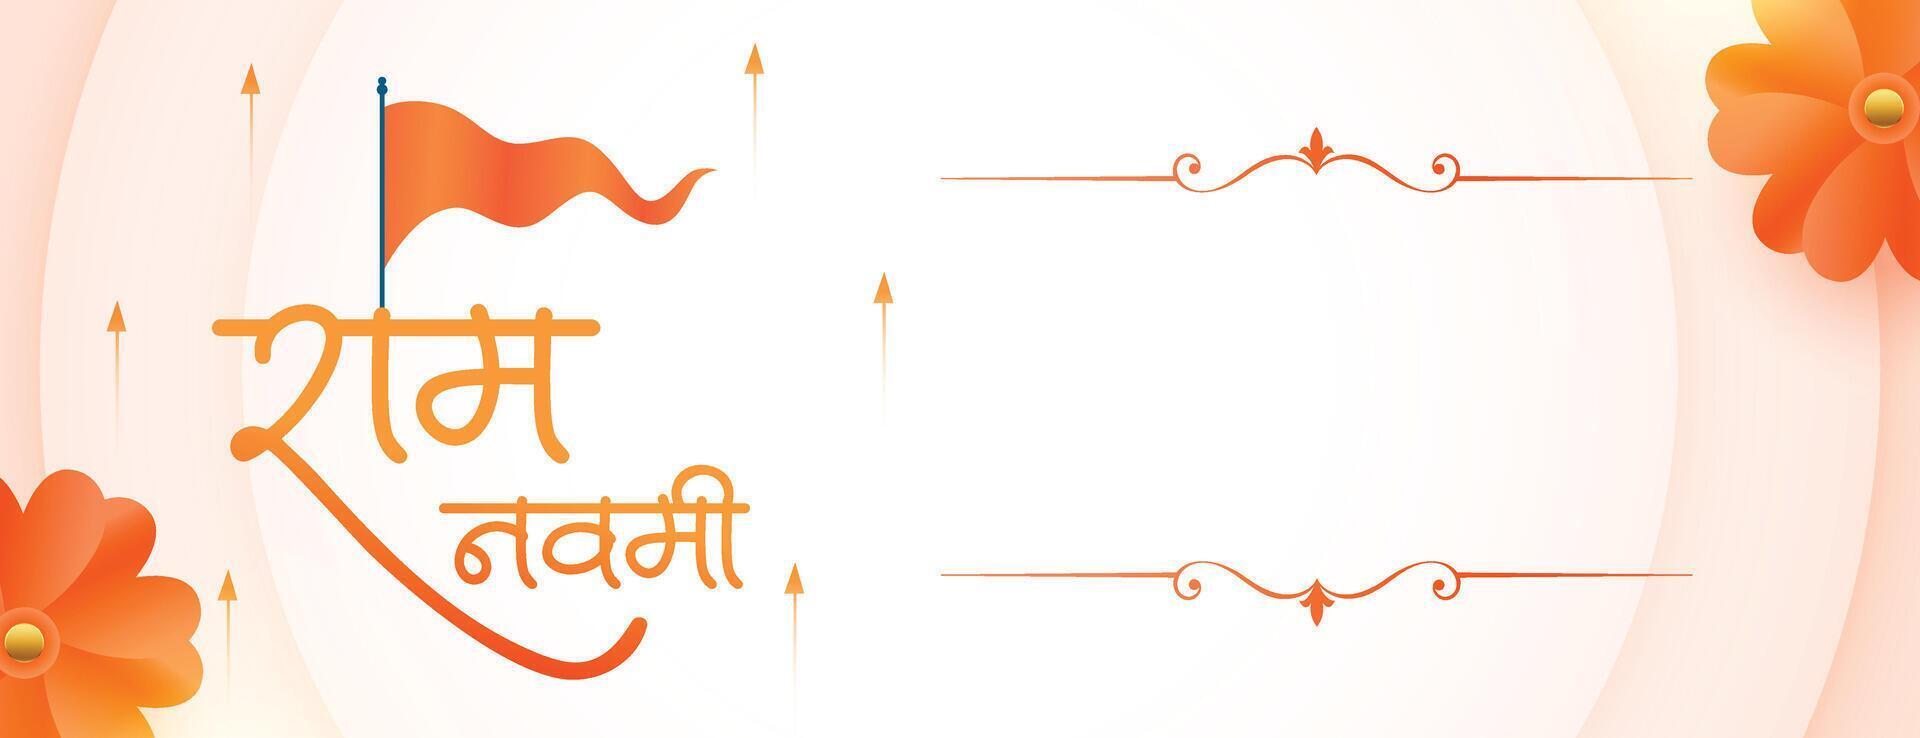 indiano cultural shri RAM navami desejos bandeira com texto espaço vetor